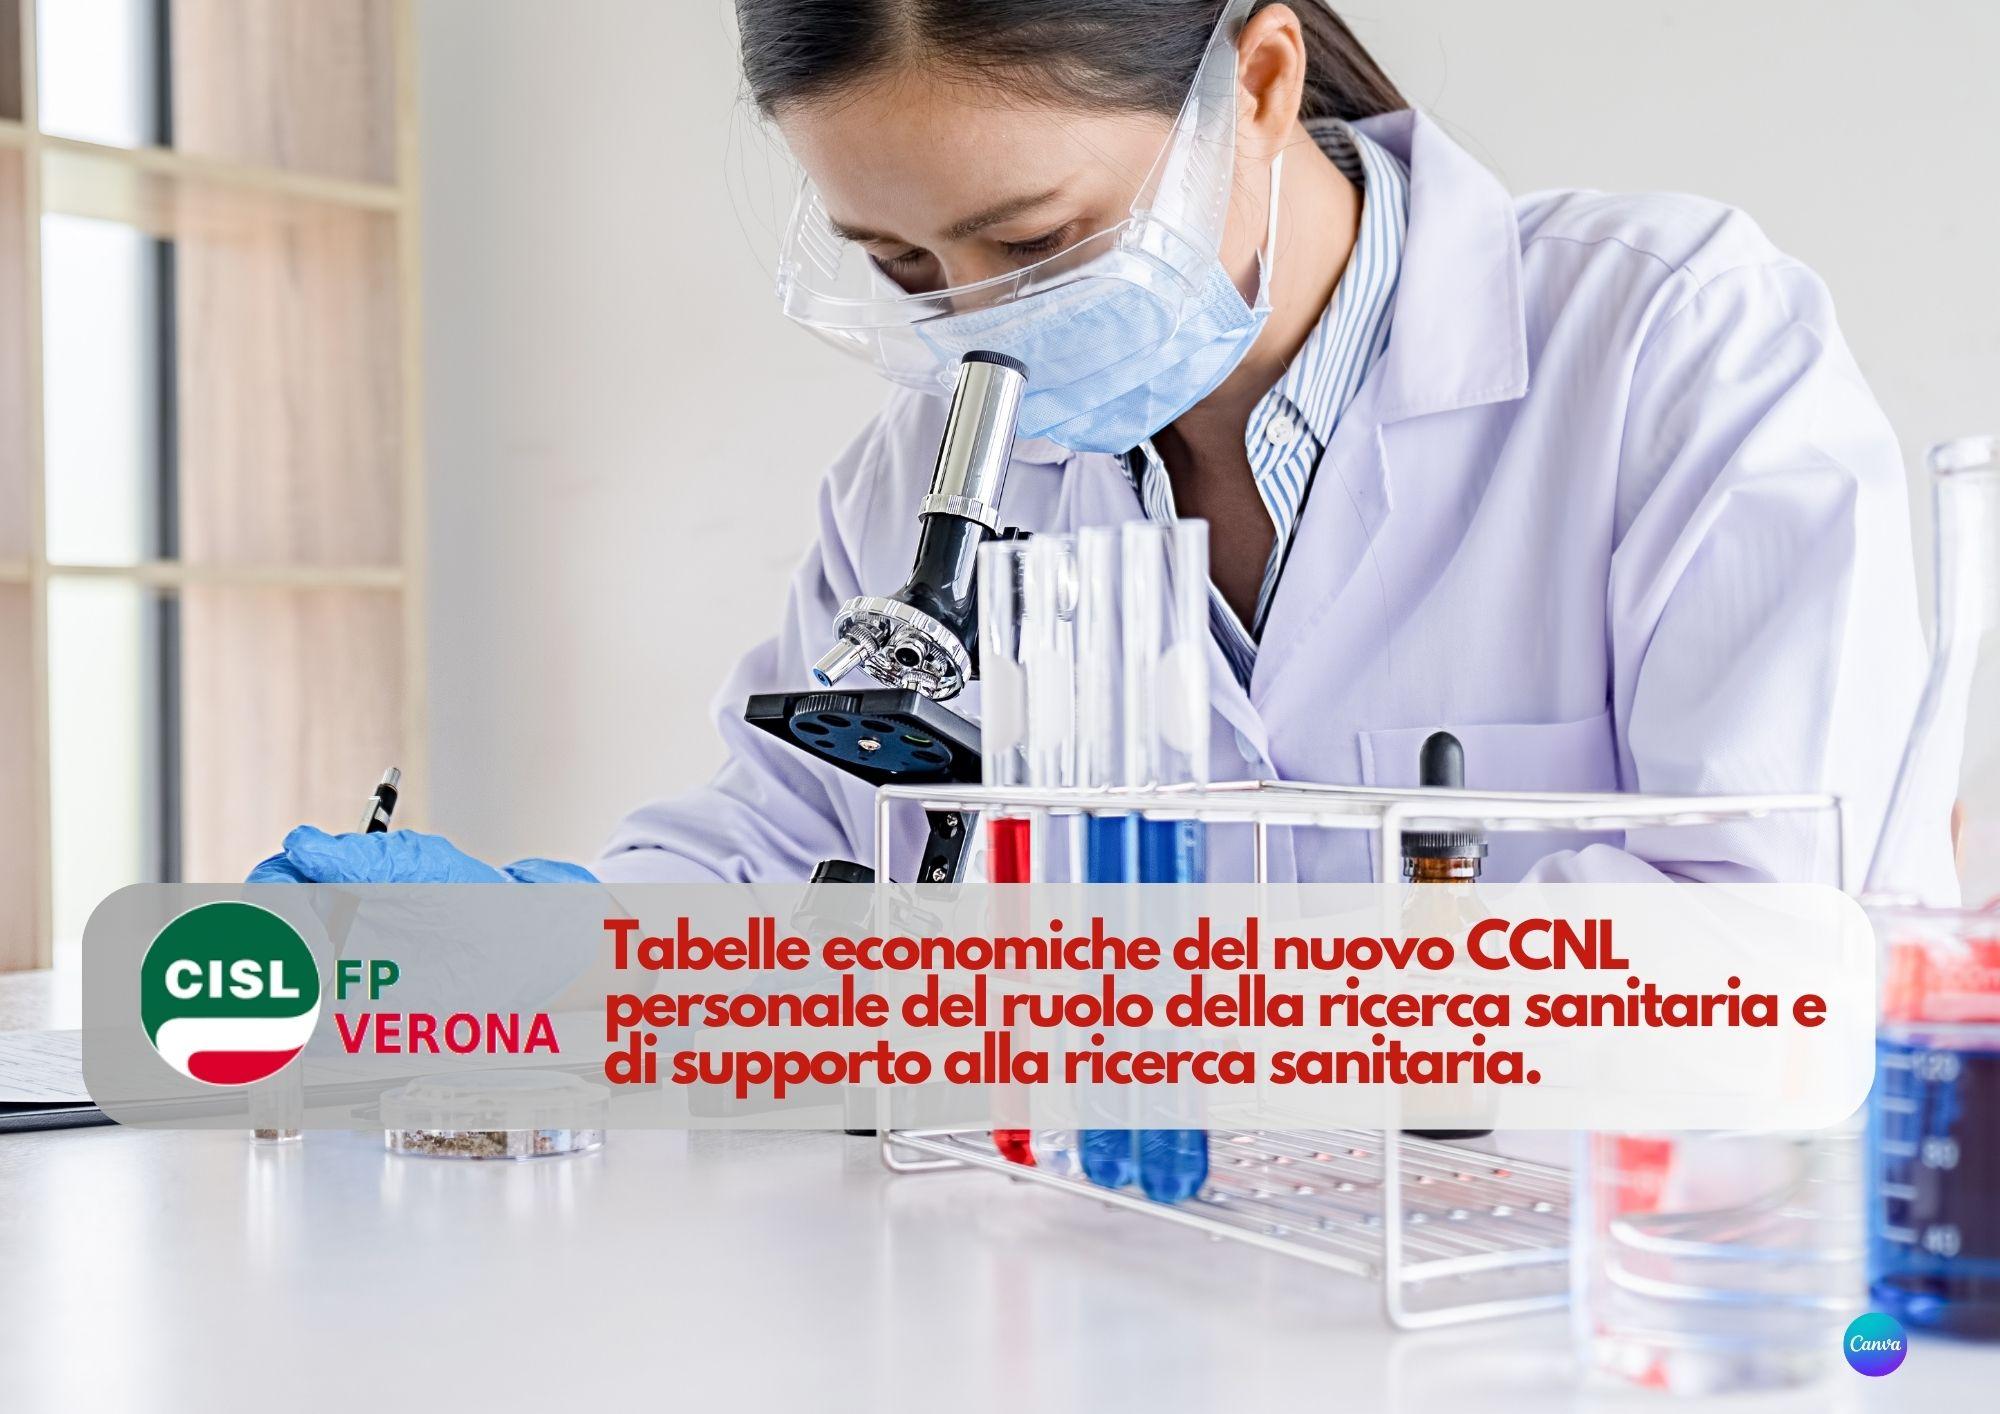 CISL FP Verona. Nuovo CCNL personale ruolo ricerca sanitaria e supporto. Tabelle economiche